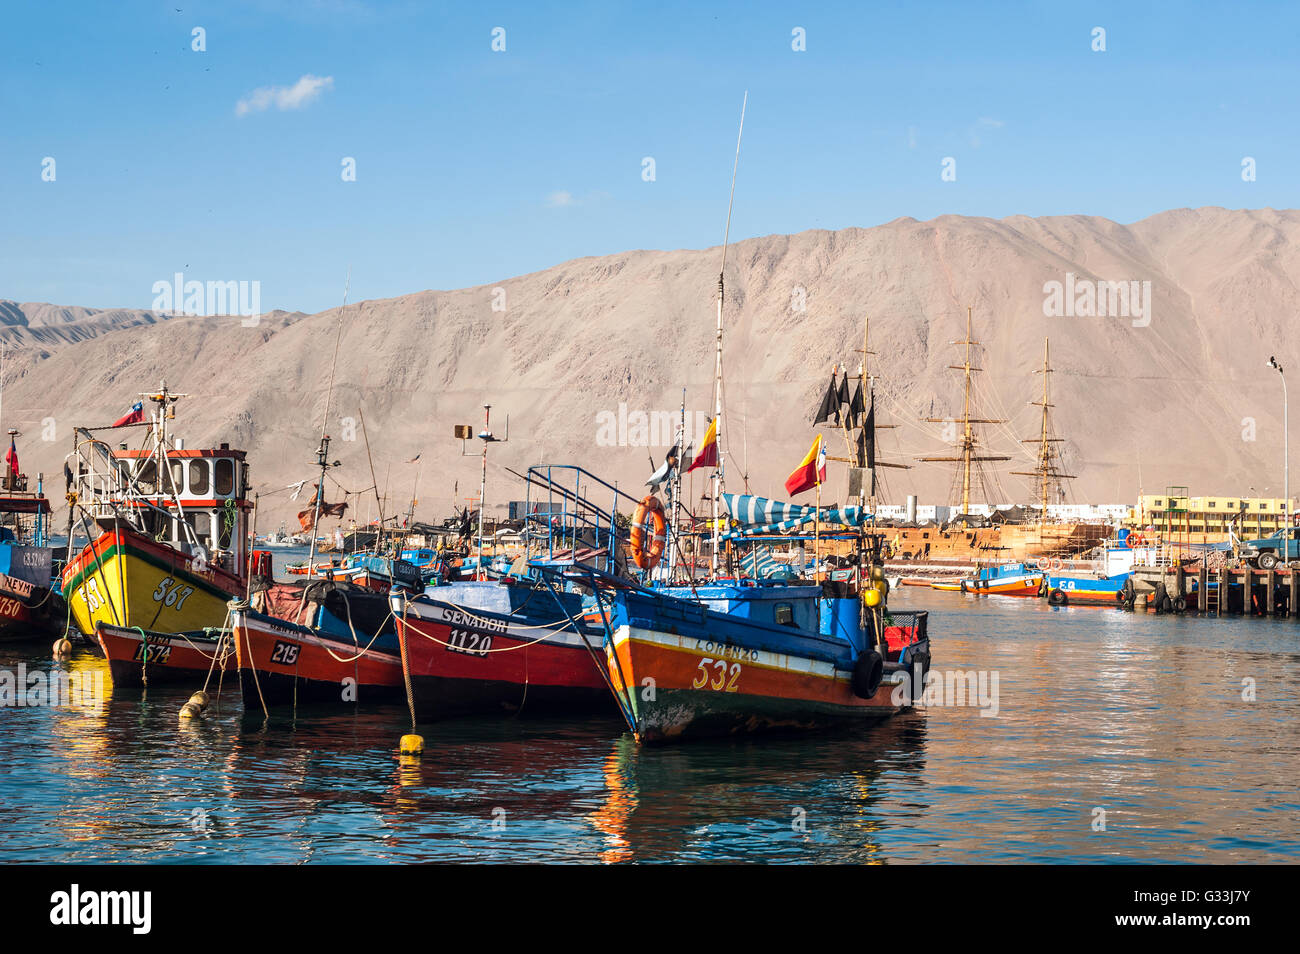 Iquique, Chile - 17. März 2011: Bunte hölzerne Fischerboote im Hafen von Iquique Hafen im Norden Chiles Stockfoto